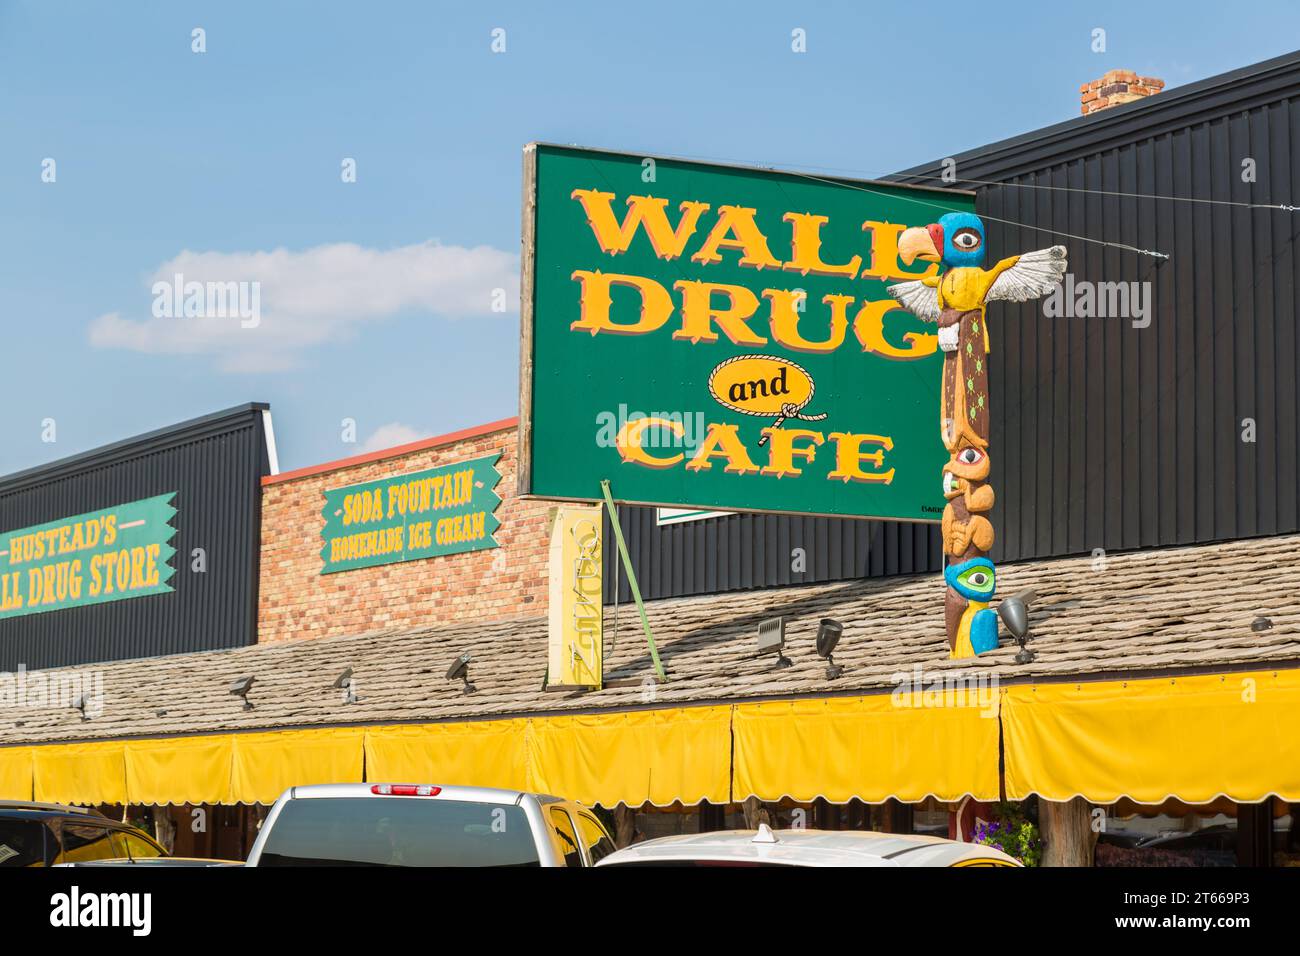 Letrero de escaparate para la histórica tienda de drogas Wall en Wall, Dakota del Sur, EE.UU Foto de stock